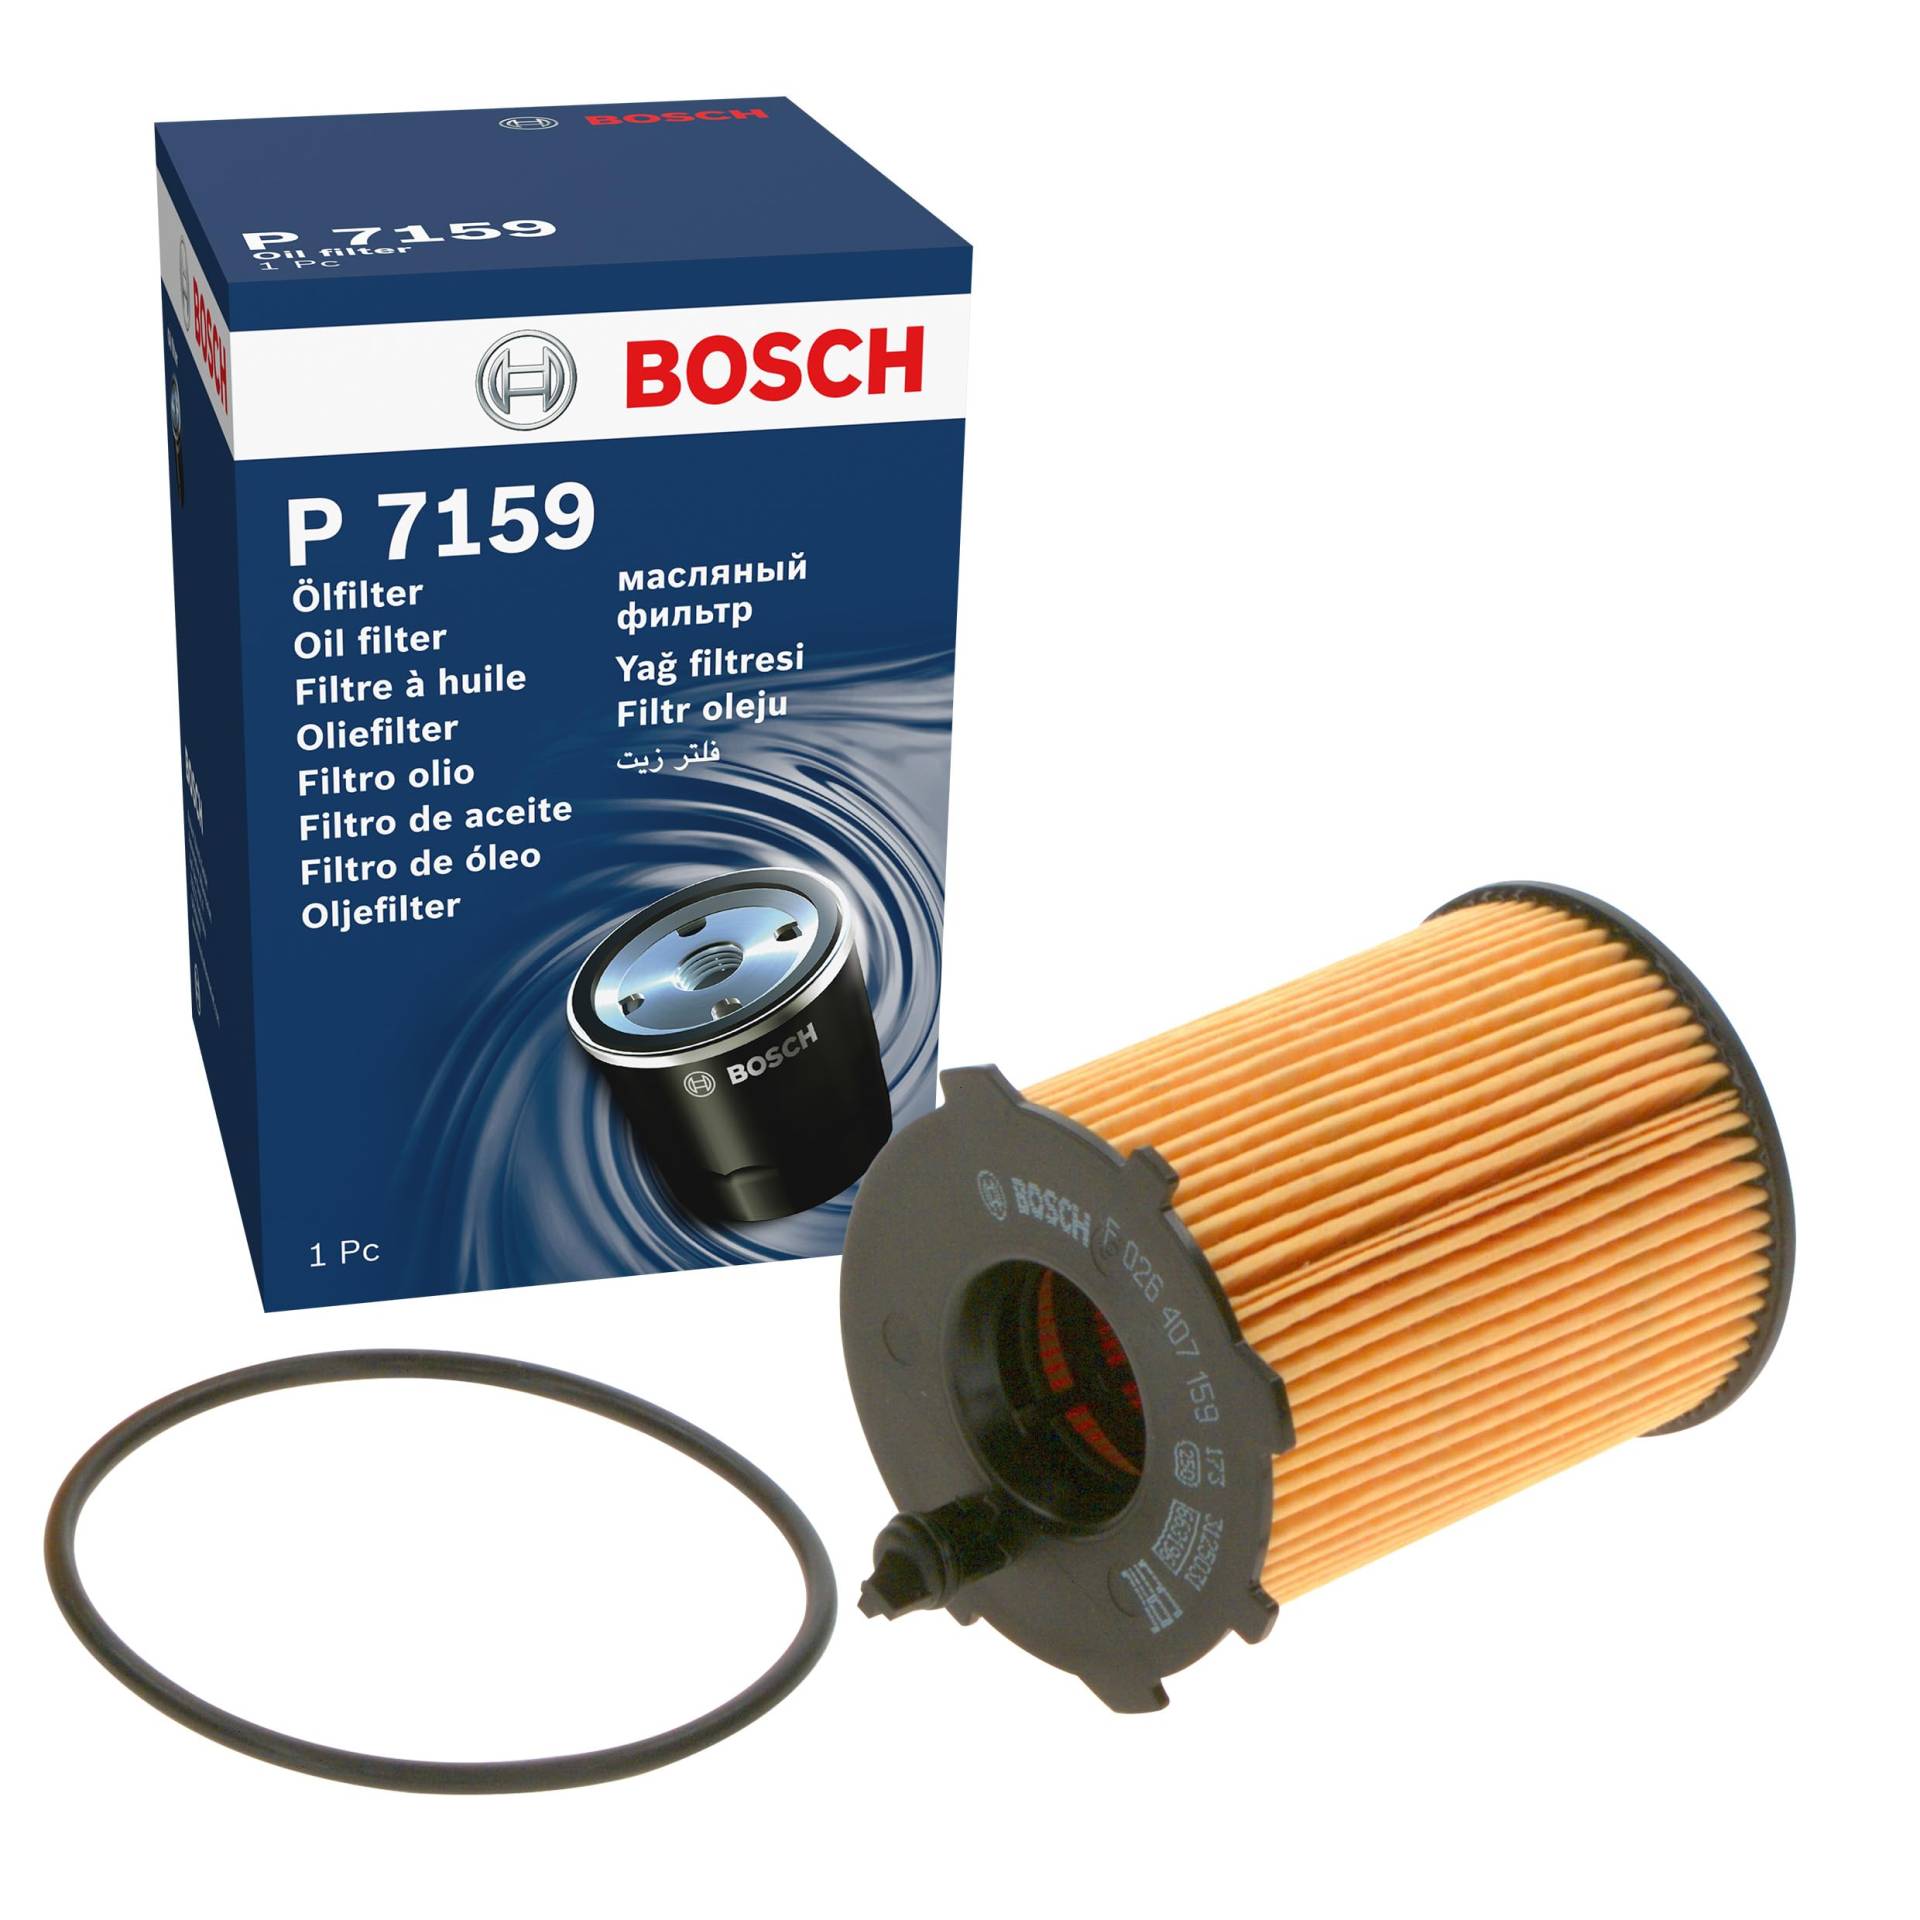 Bosch P7159 - Ölfilter Auto von Bosch Automotive